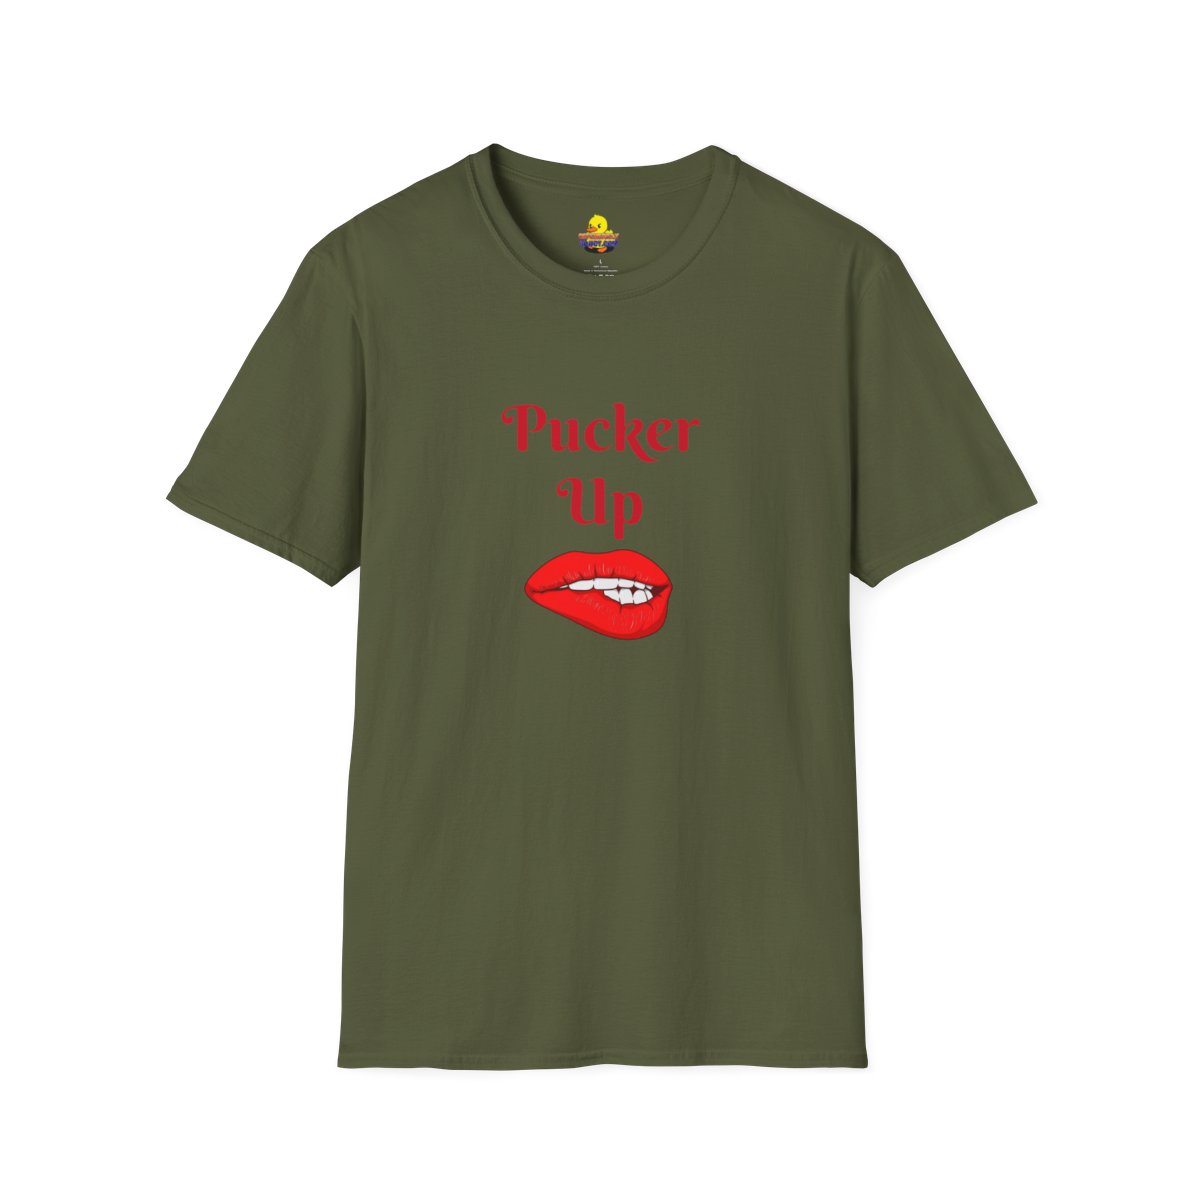 Kiss My A$$ T-Shirt product thumbnail image